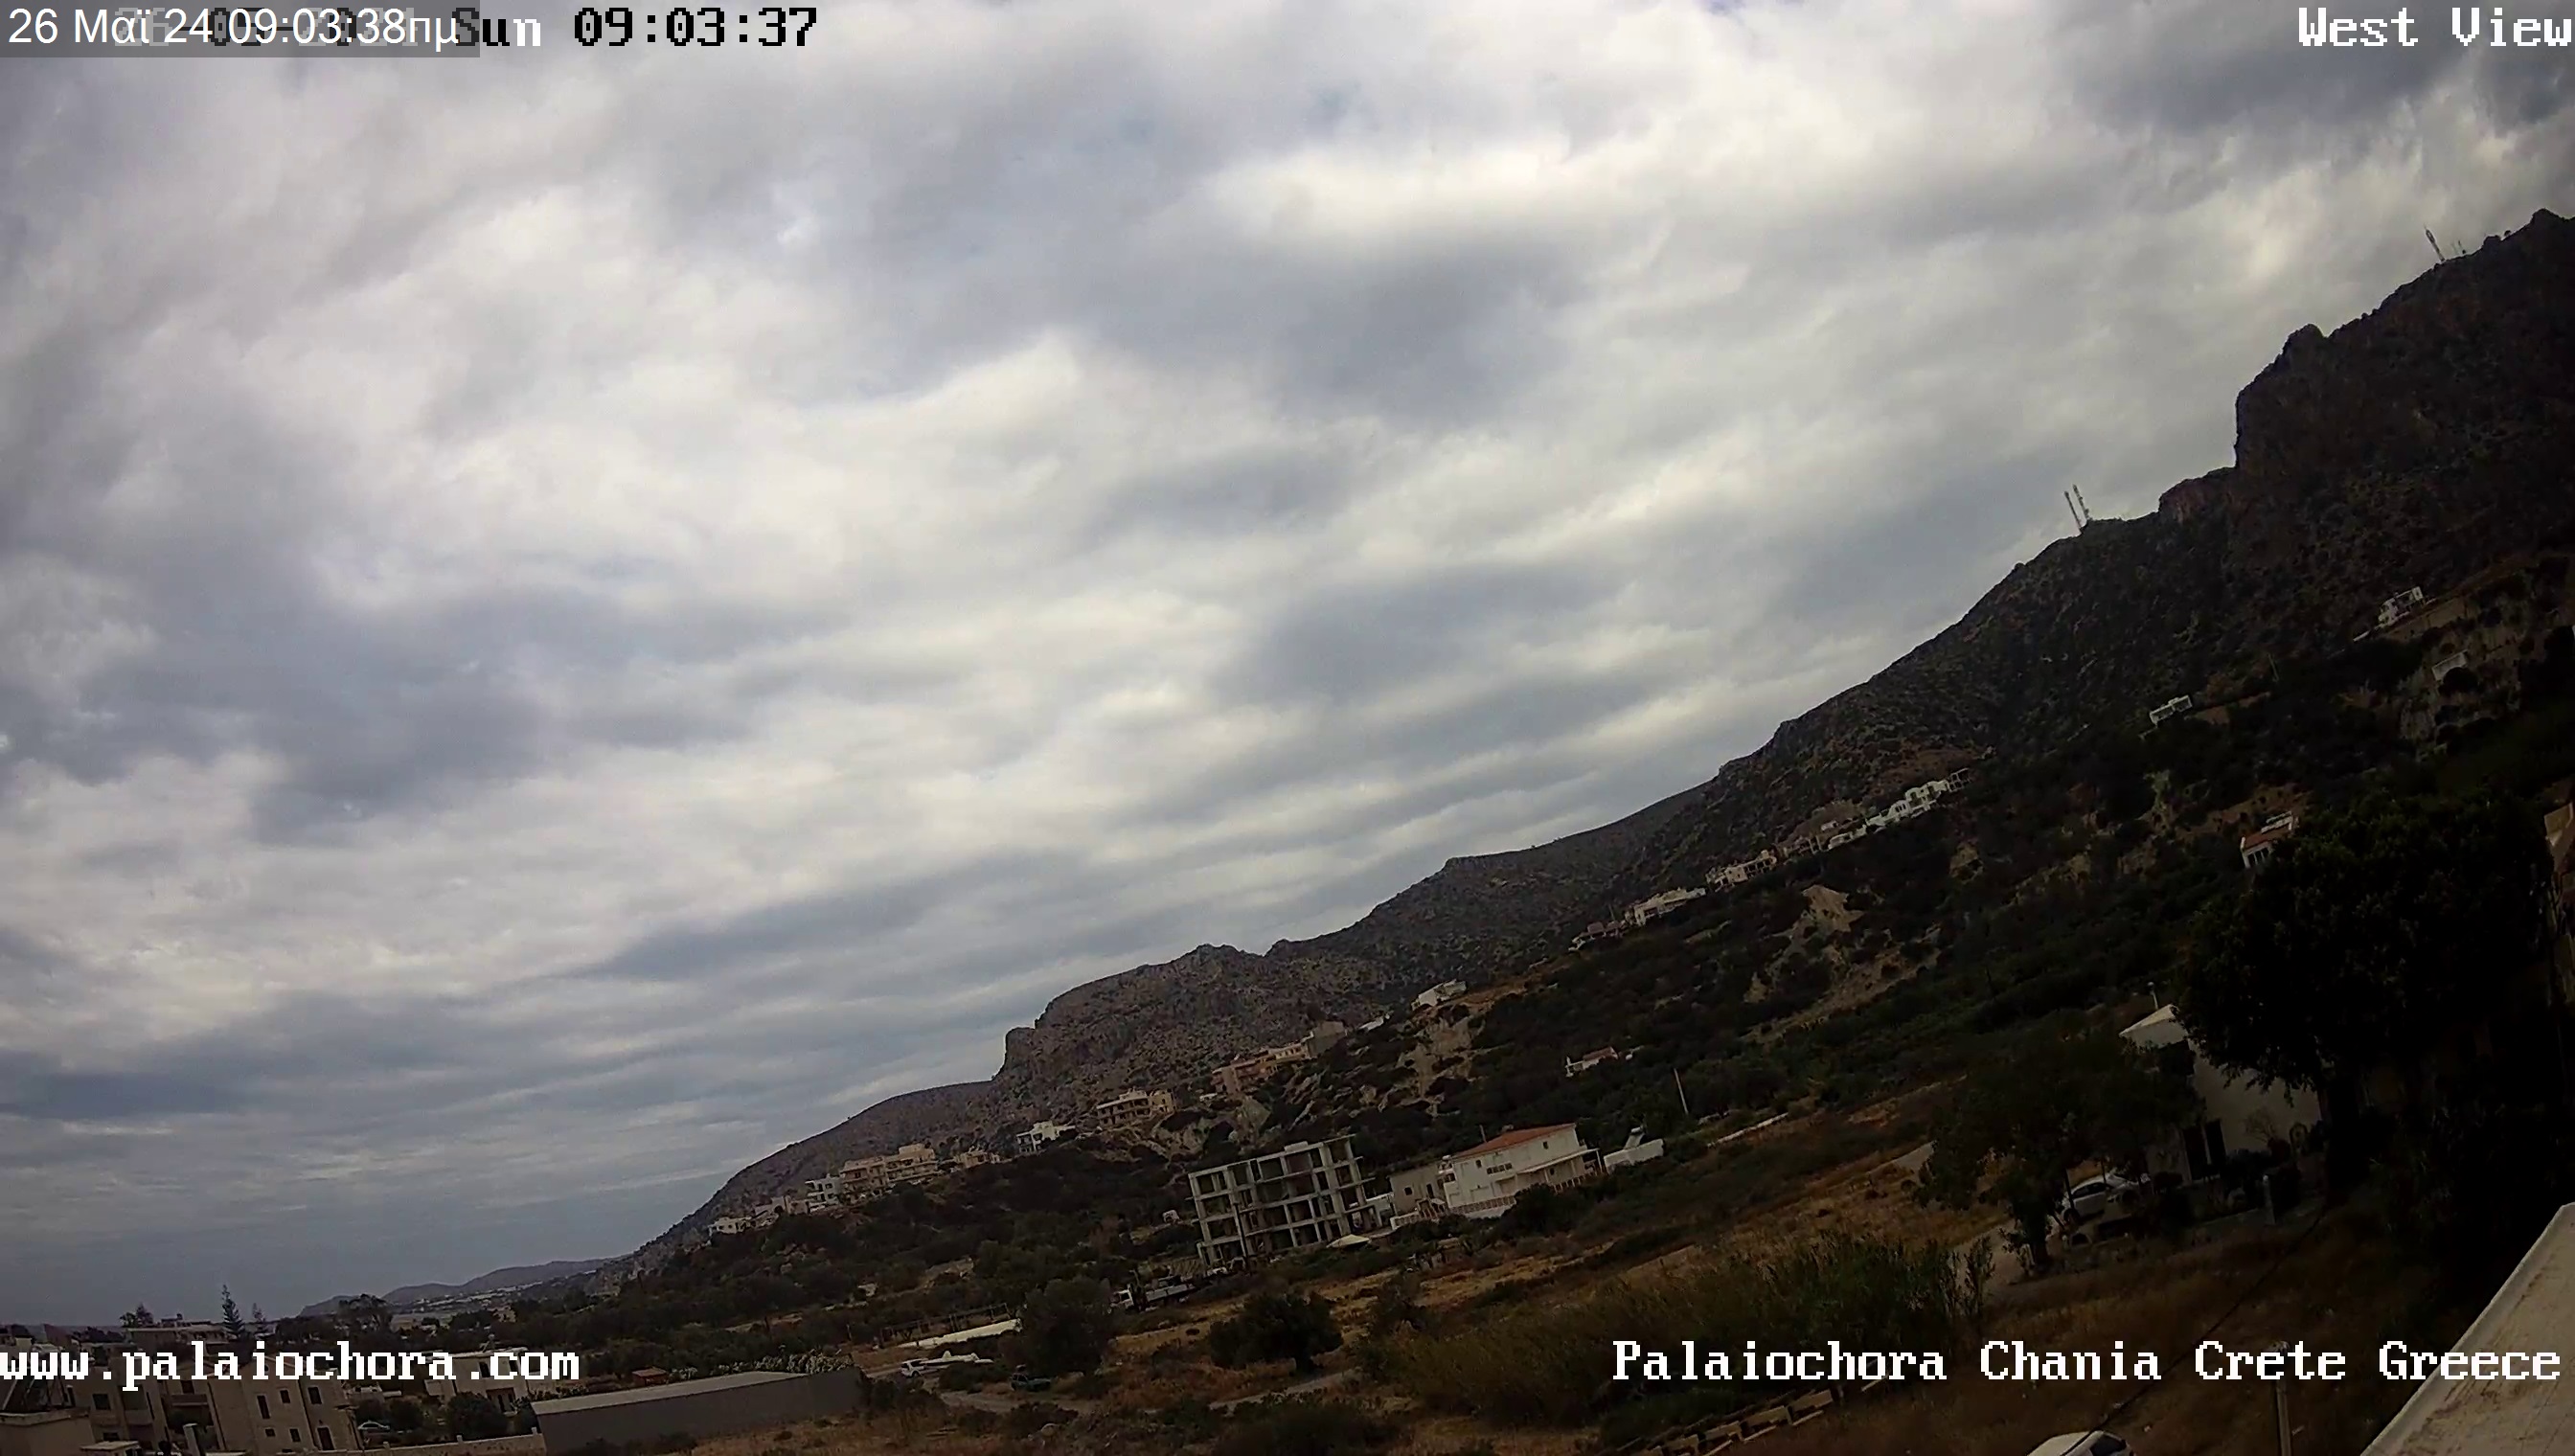 Paleochora (Kreta) Fre. 09:08